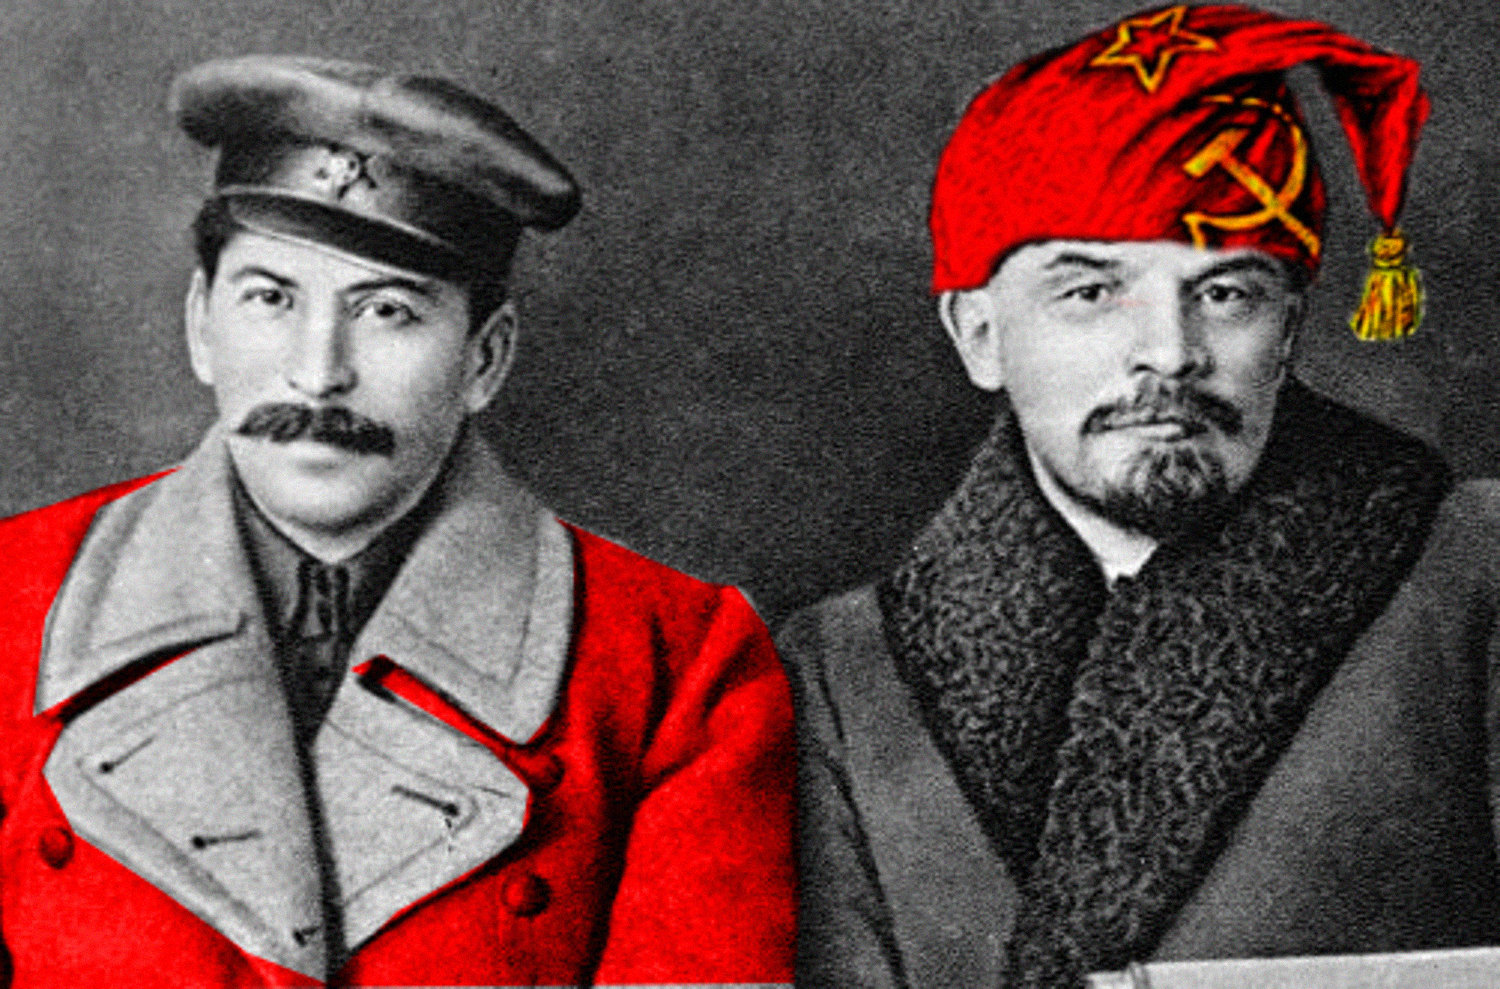 ДОМ транслює радянські фільми з пропагандою Лєніна/Сталіна 6